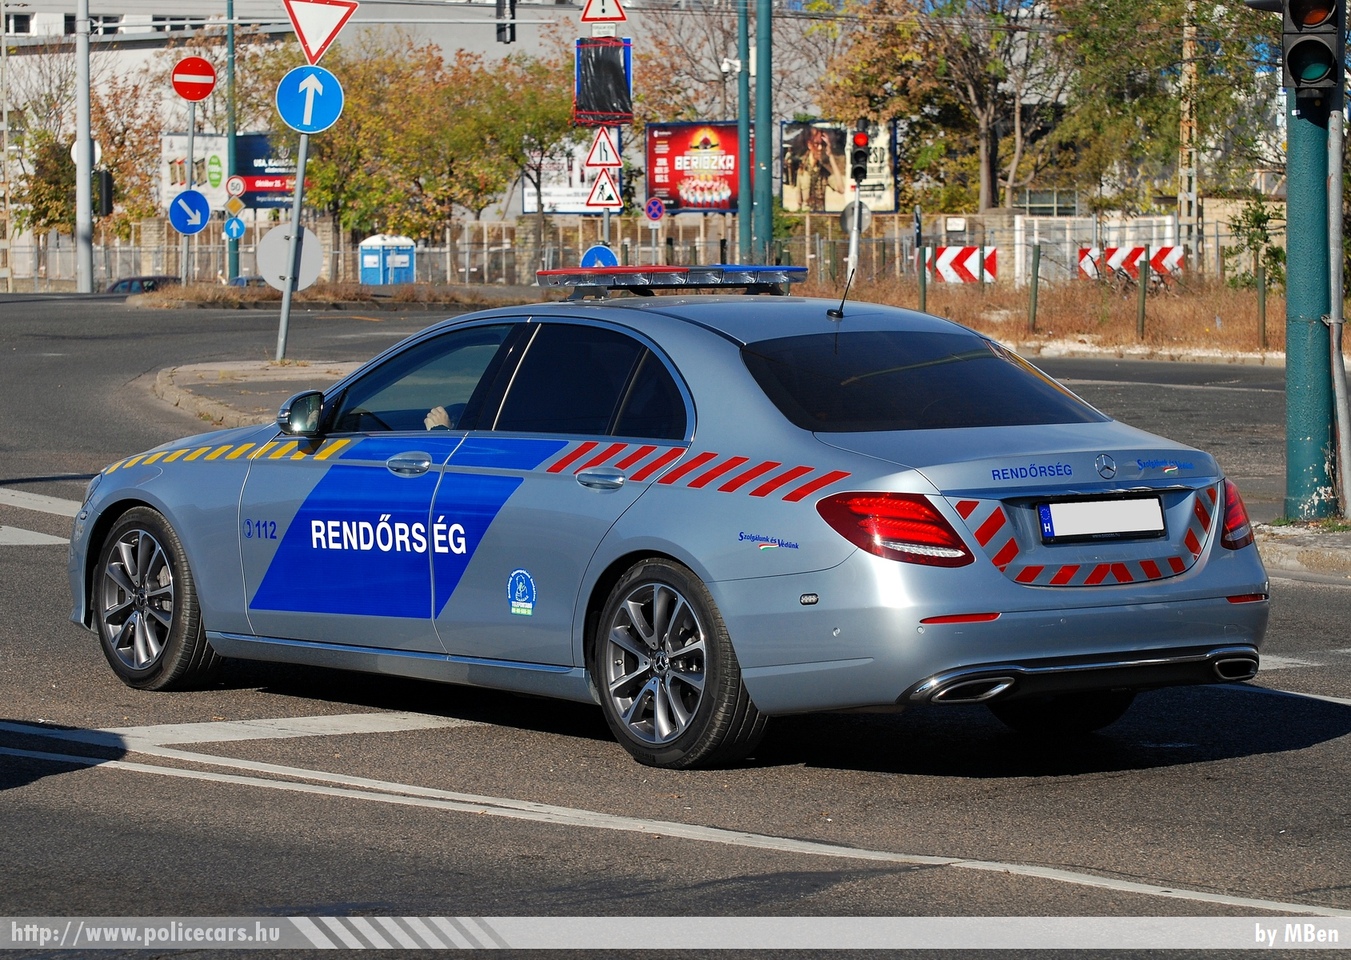 Mercedes-Benz E, fotó: MBen
Keywords: rendőr rendőrautó rendőrség magyar Magyarország Hungary hungarian police policecar